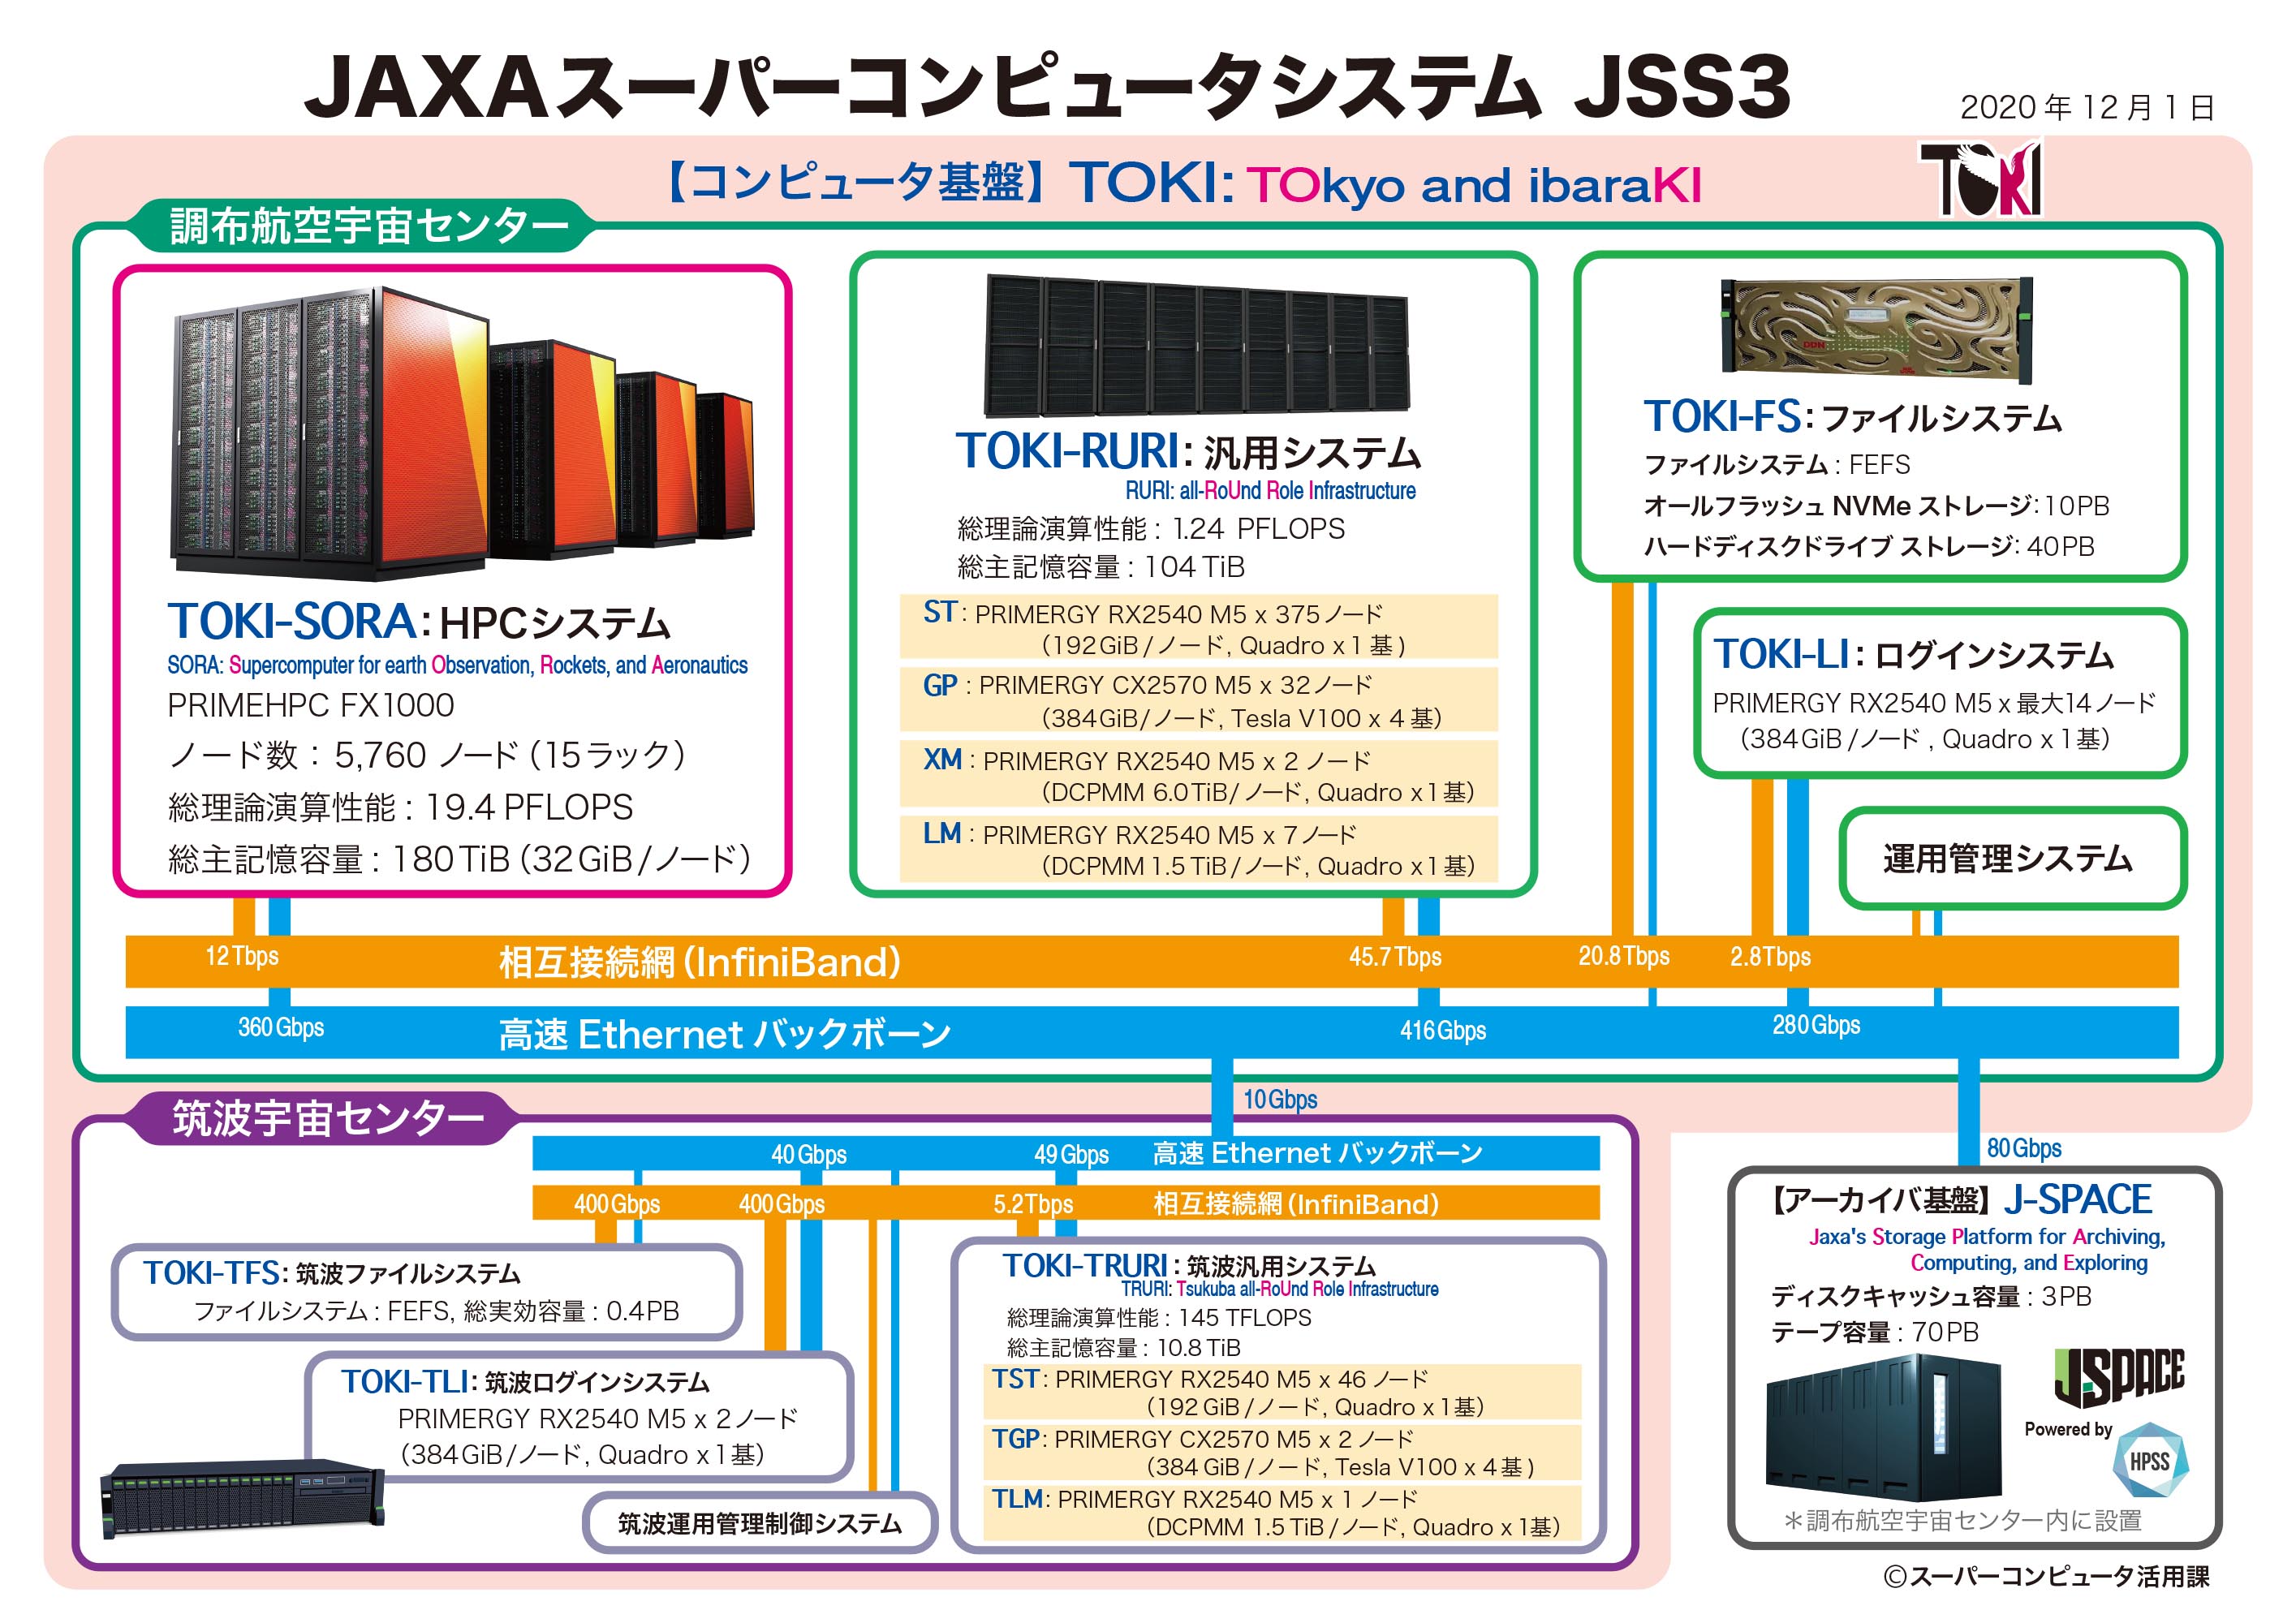 図版: JSS3 のシステム構成